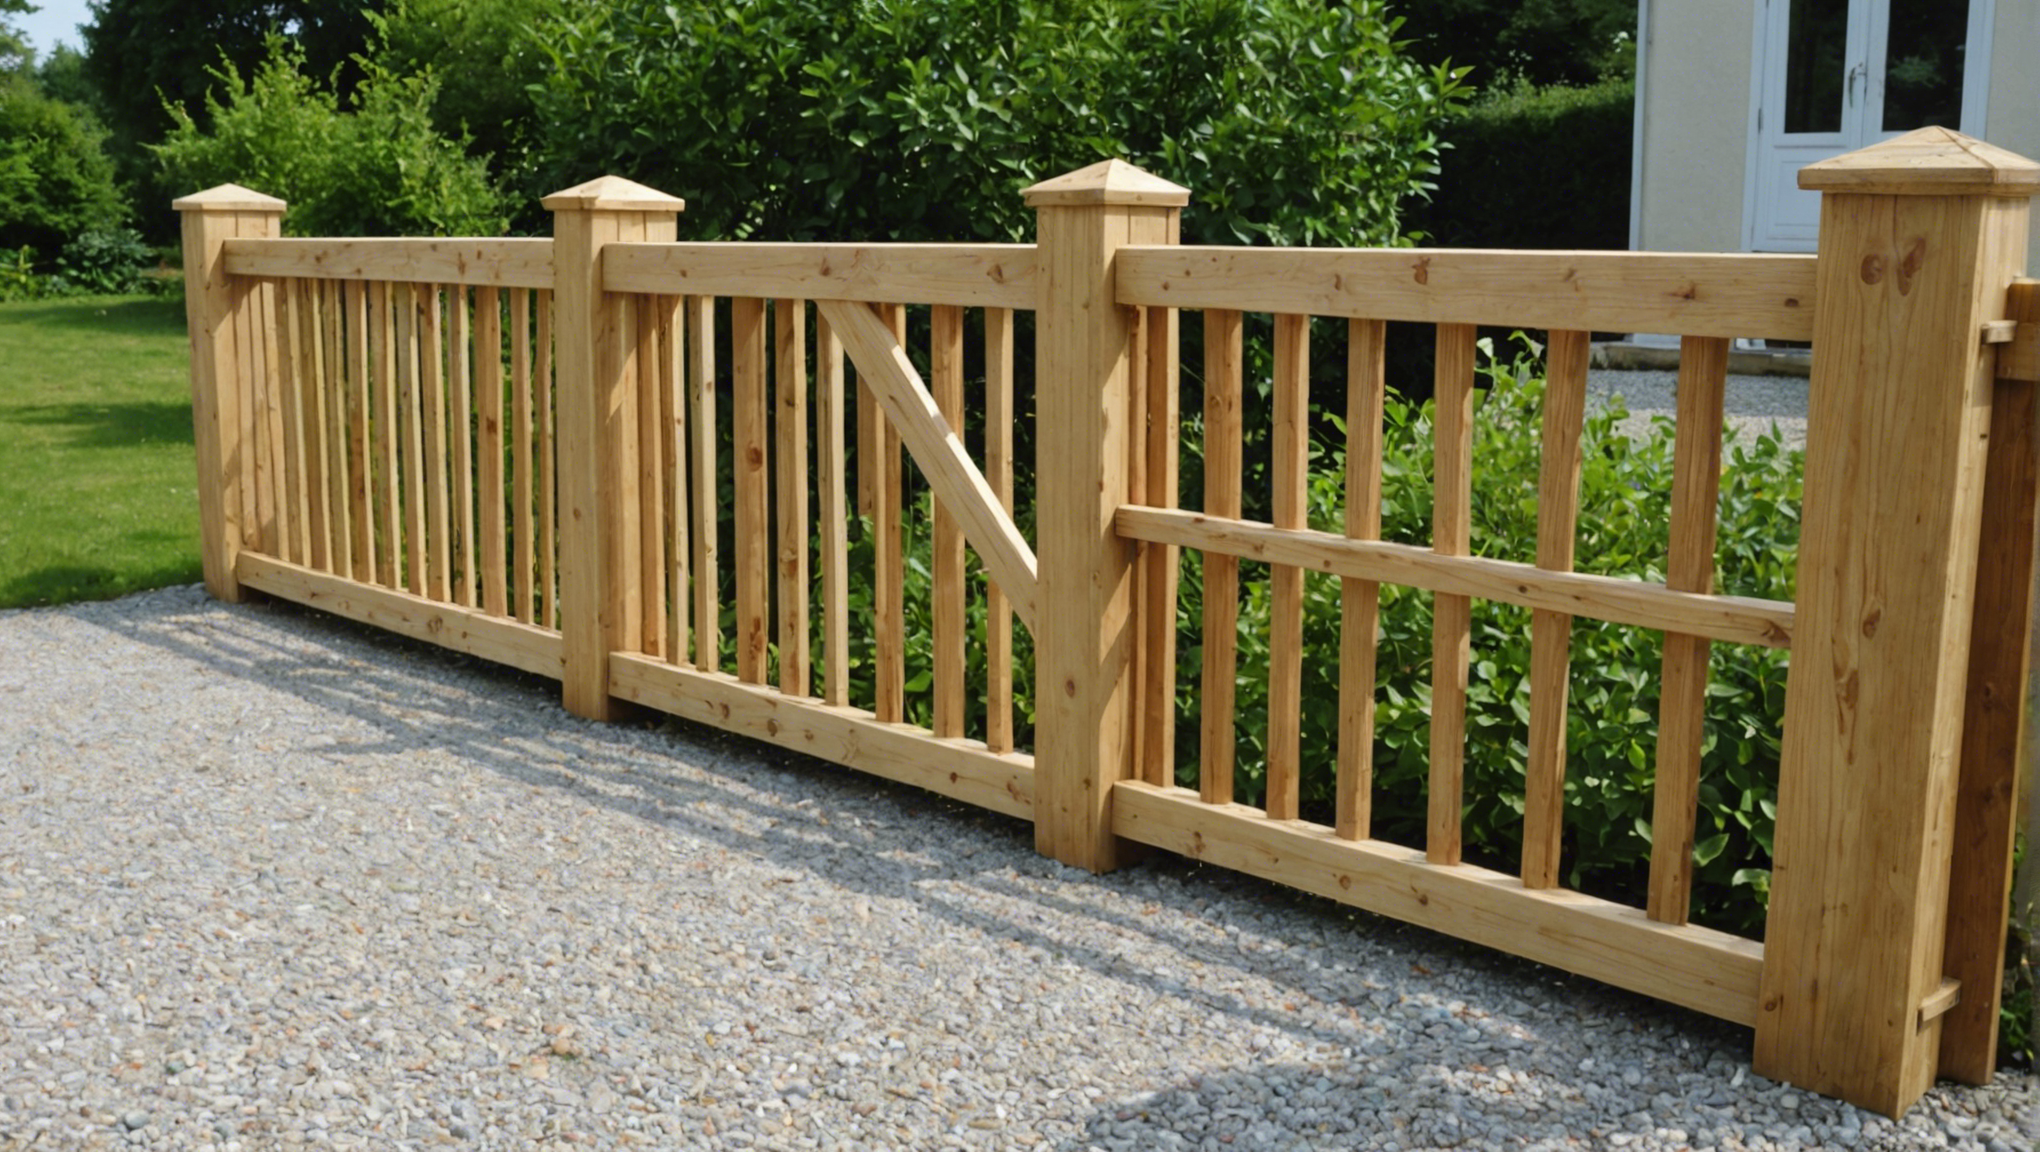 découvrez comment fabriquer un portail en bois étape par étape chez vous avec nos conseils pratiques et astuces de bricolage.